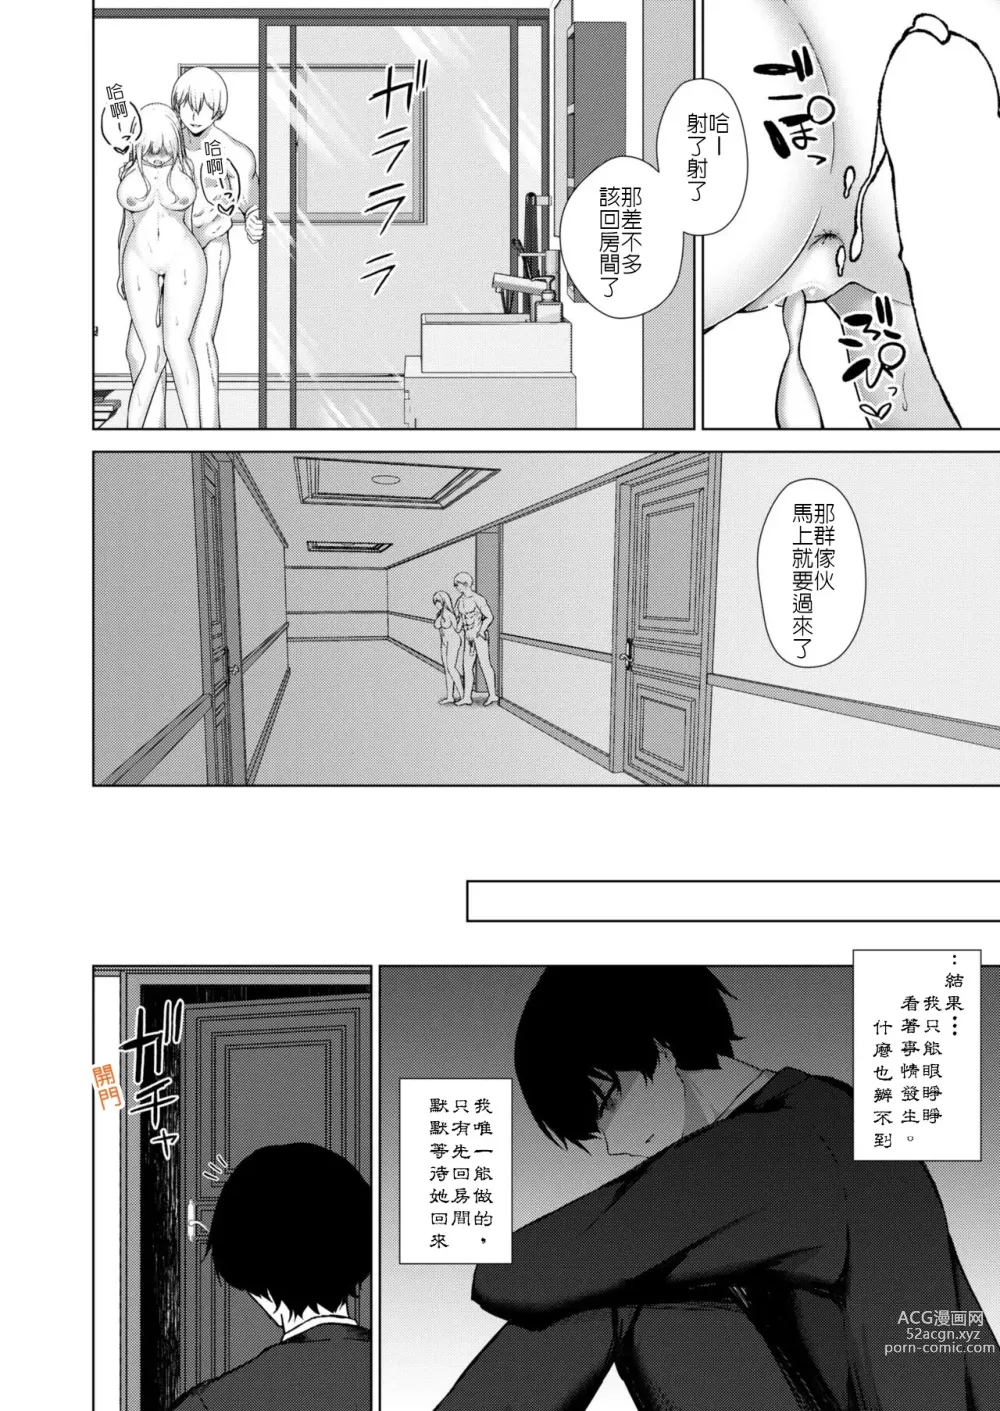 Page 22 of manga Osananajimi BSS -Nagasare Sokuochi Rankou-